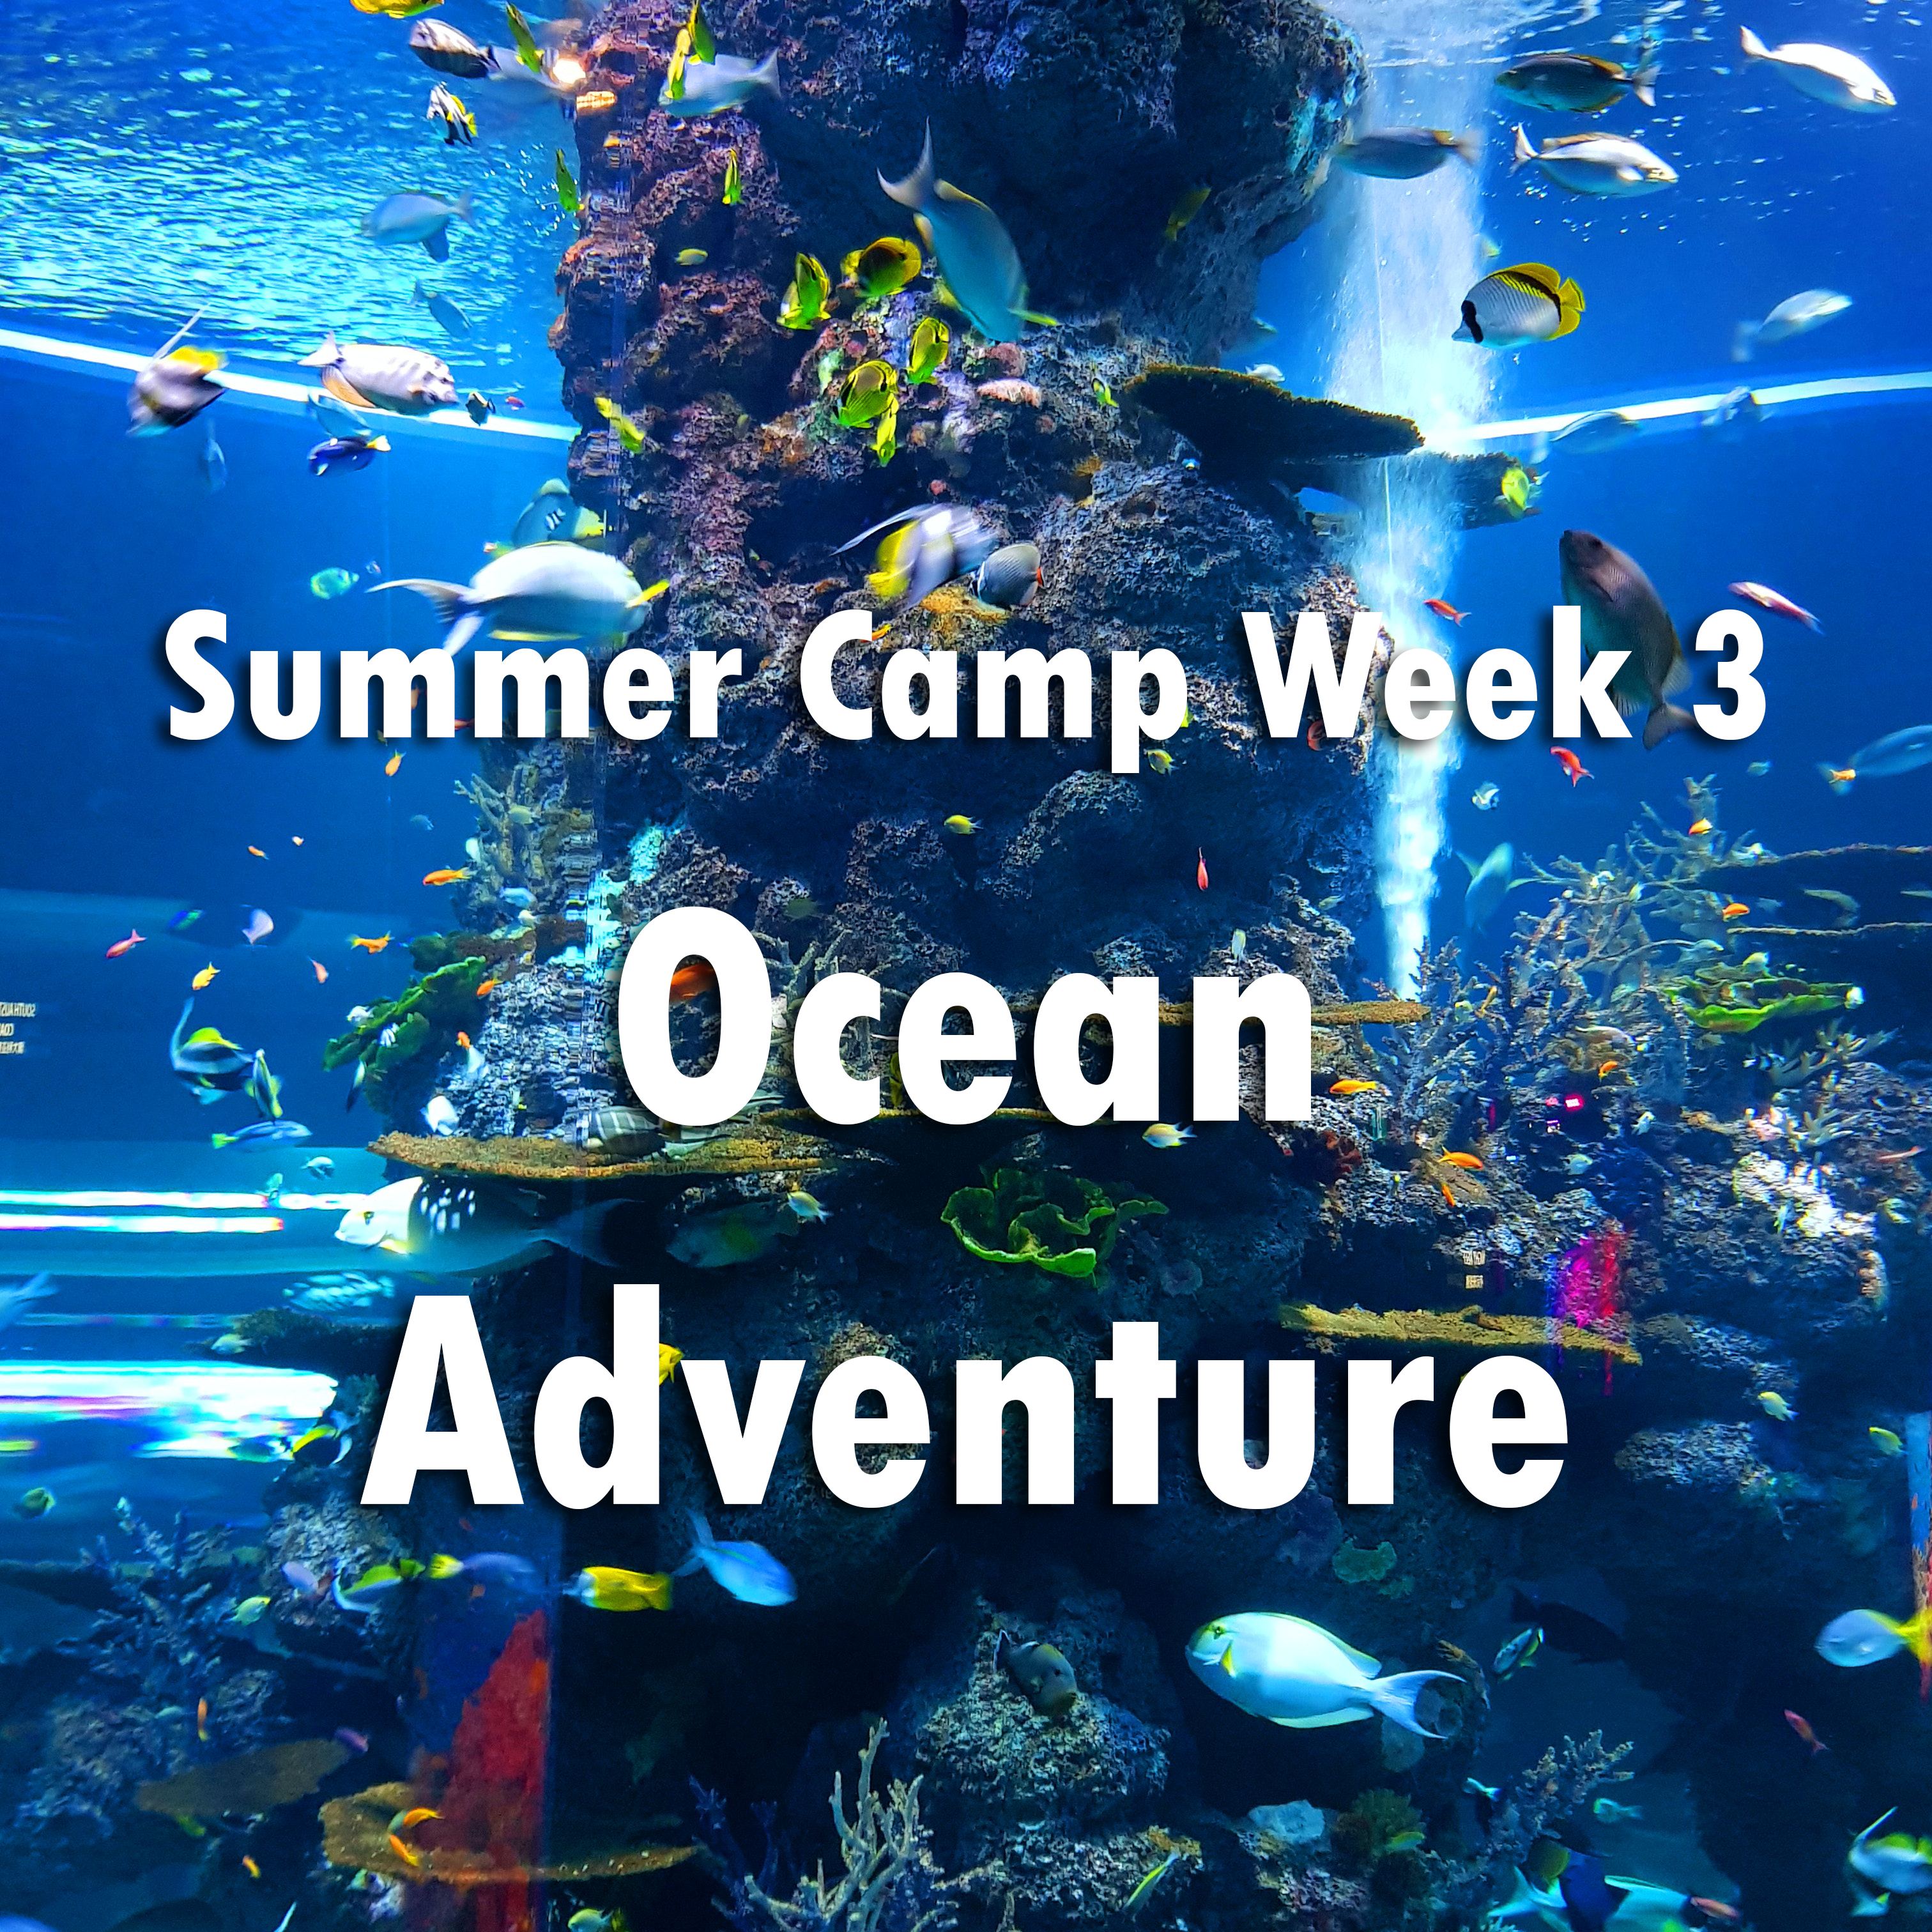 Week Three (7/11 - 7/15): OCEAN ADVENTURES